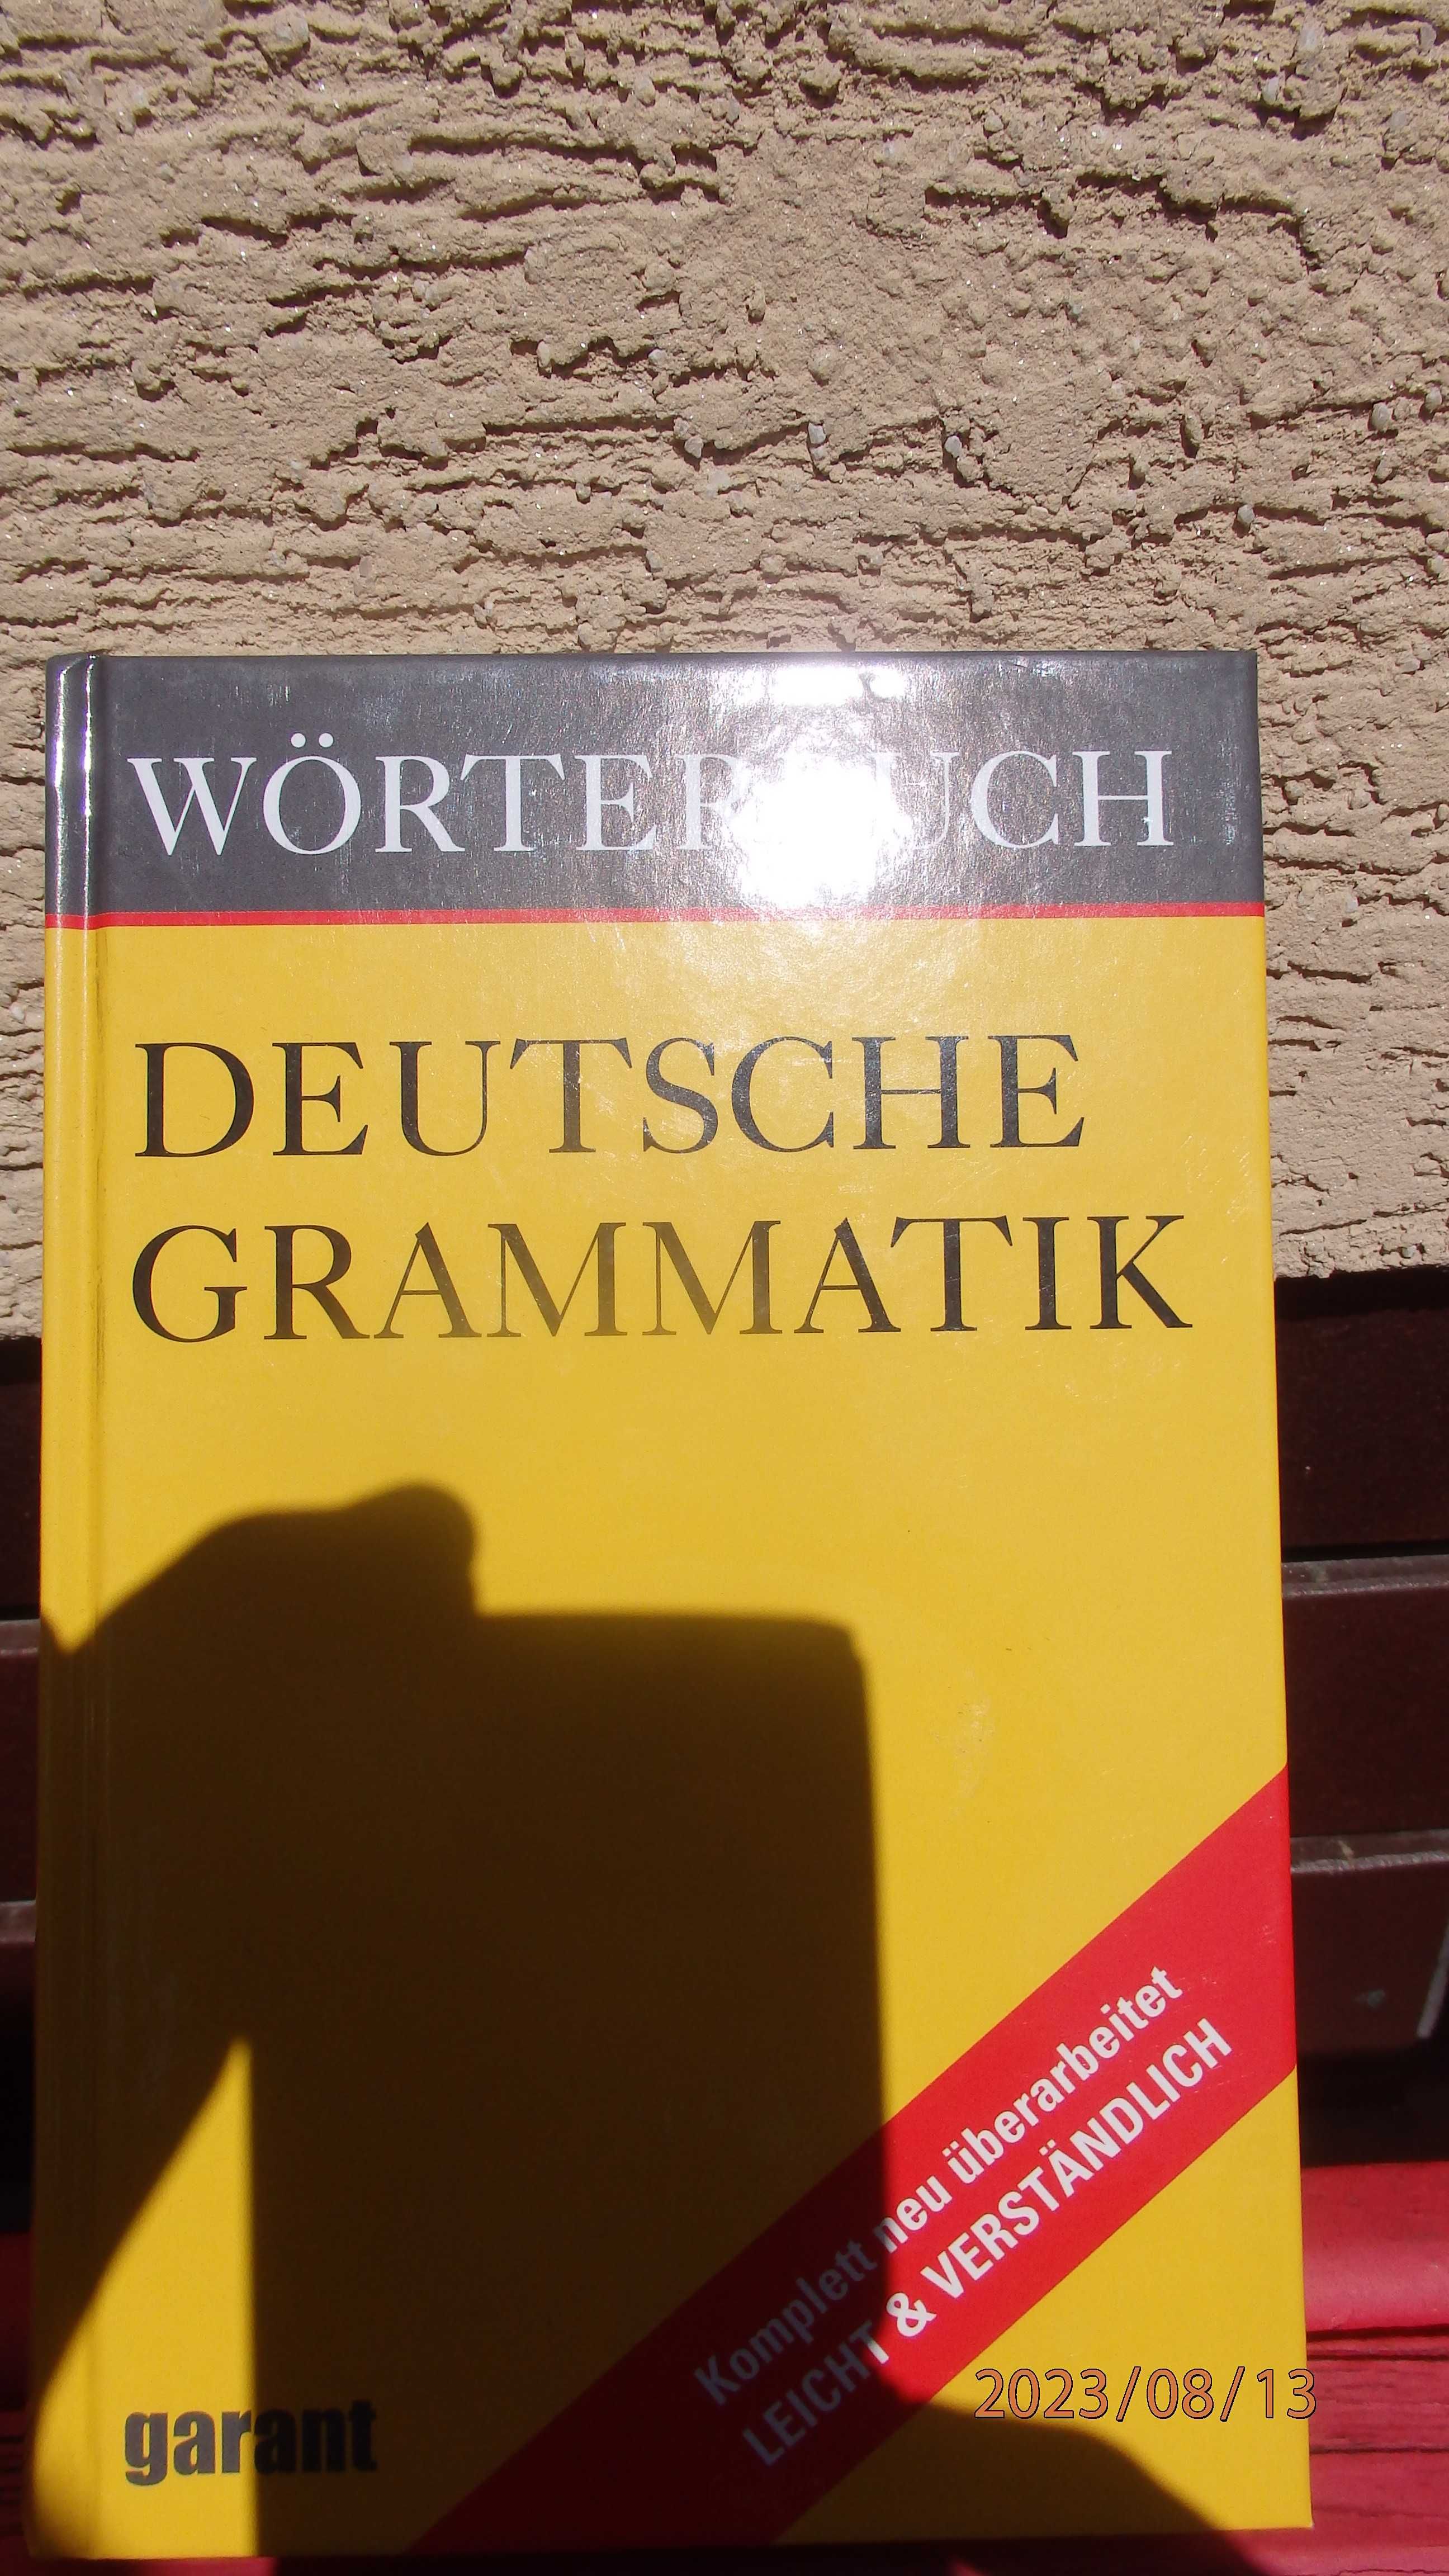 Książka Deutsche grammatik - Worterbuch